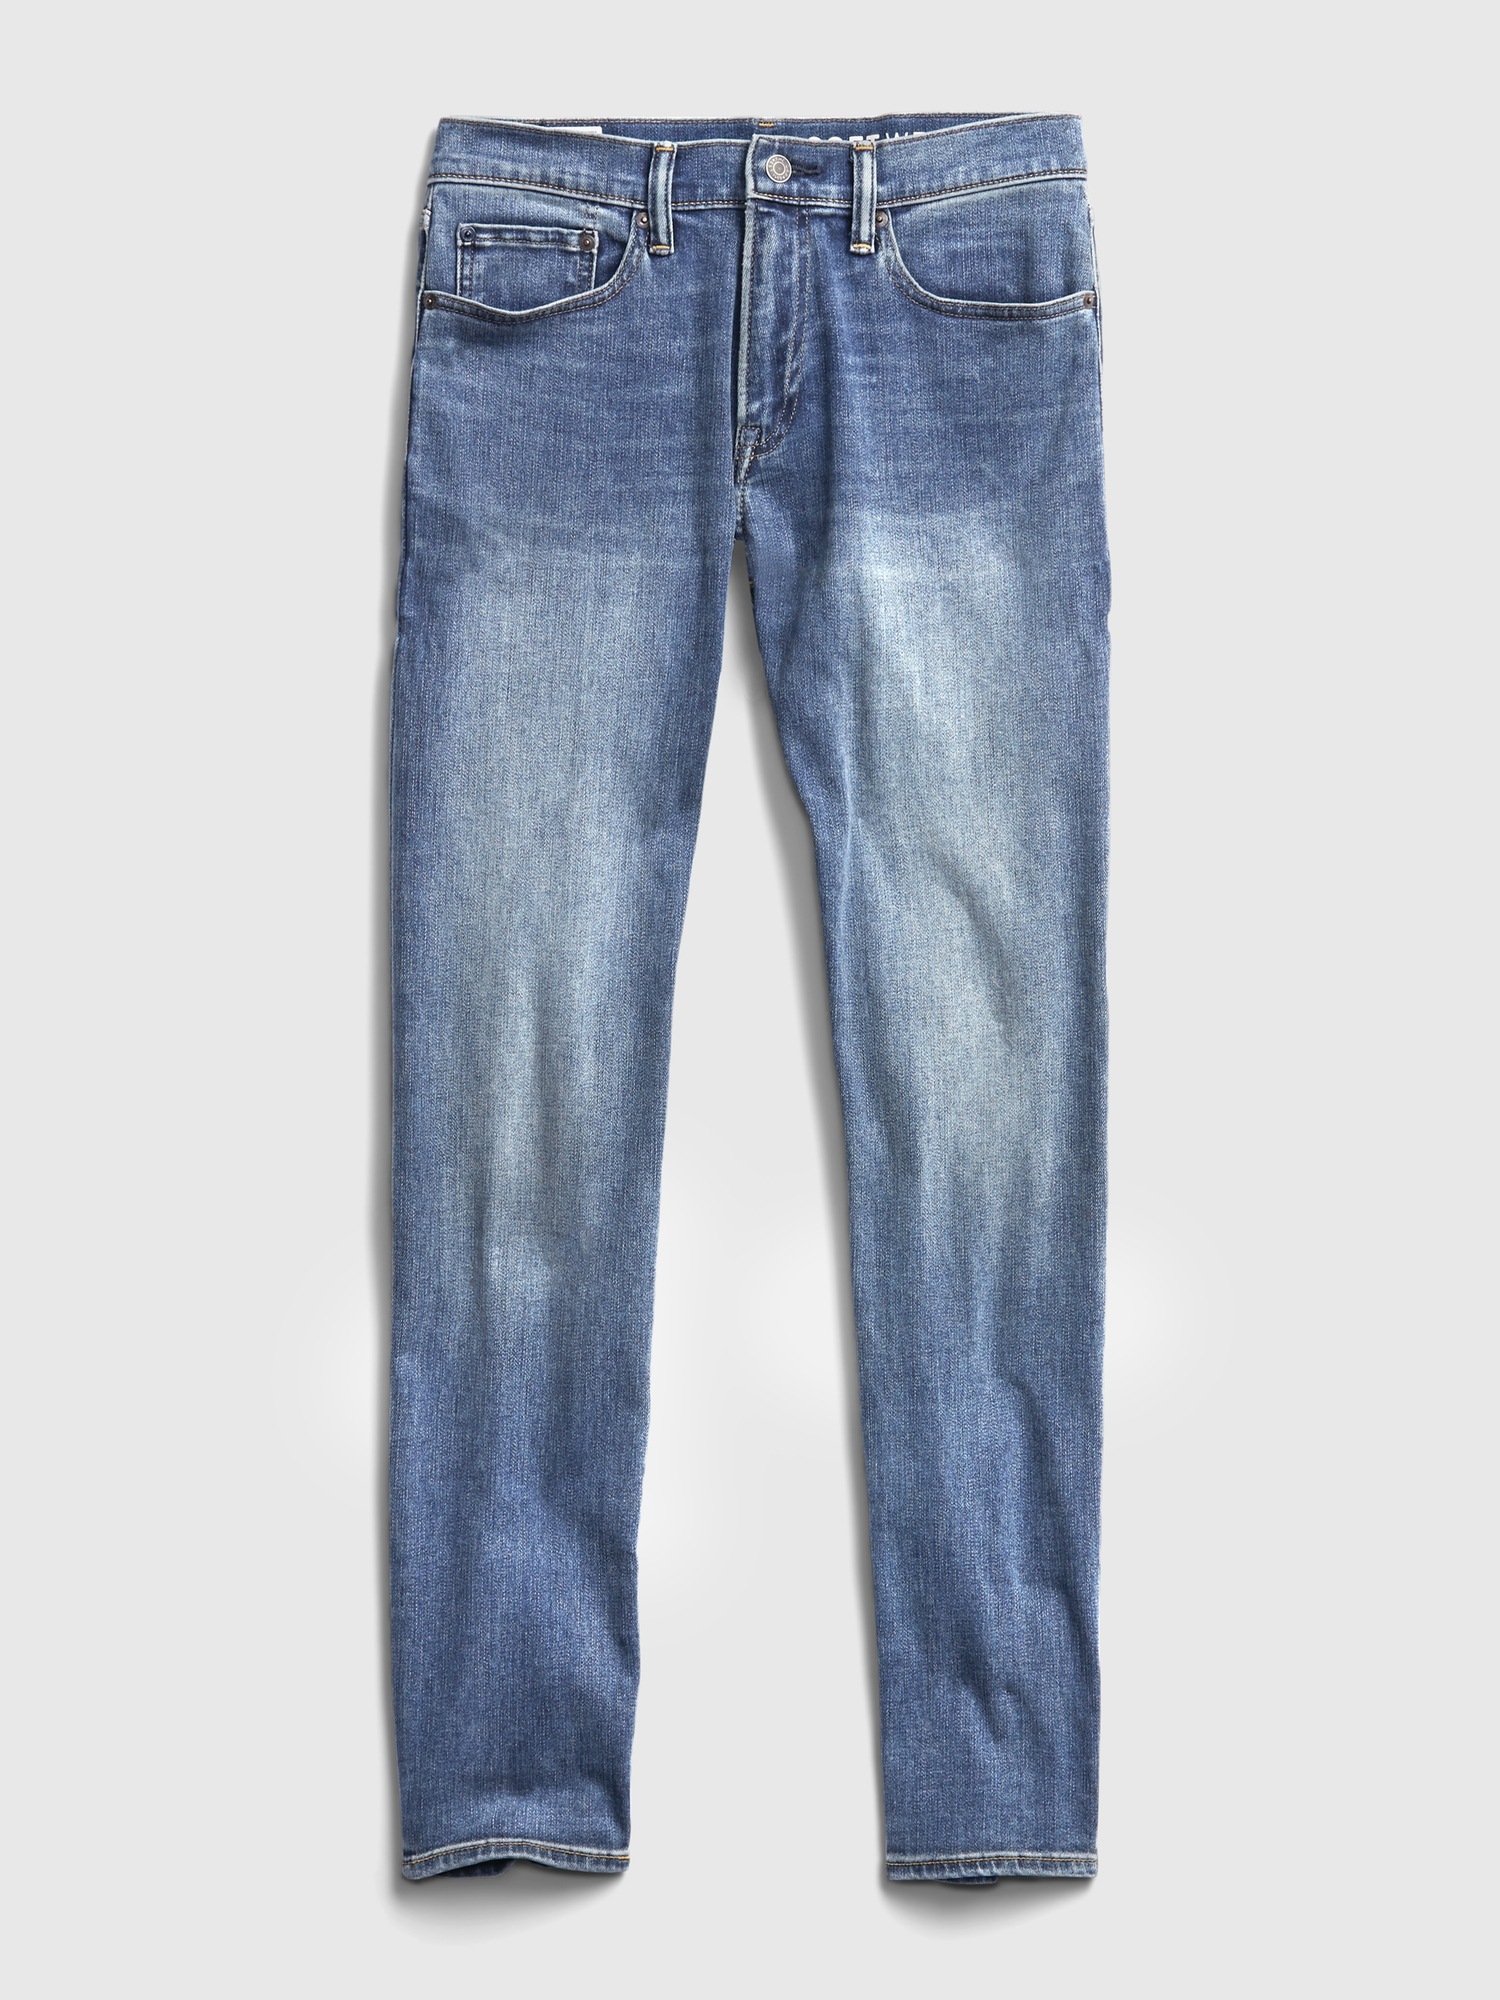 GAP Mens Soft Wear Slim Fit Jeans, Light Wash, 36W x 34L US at